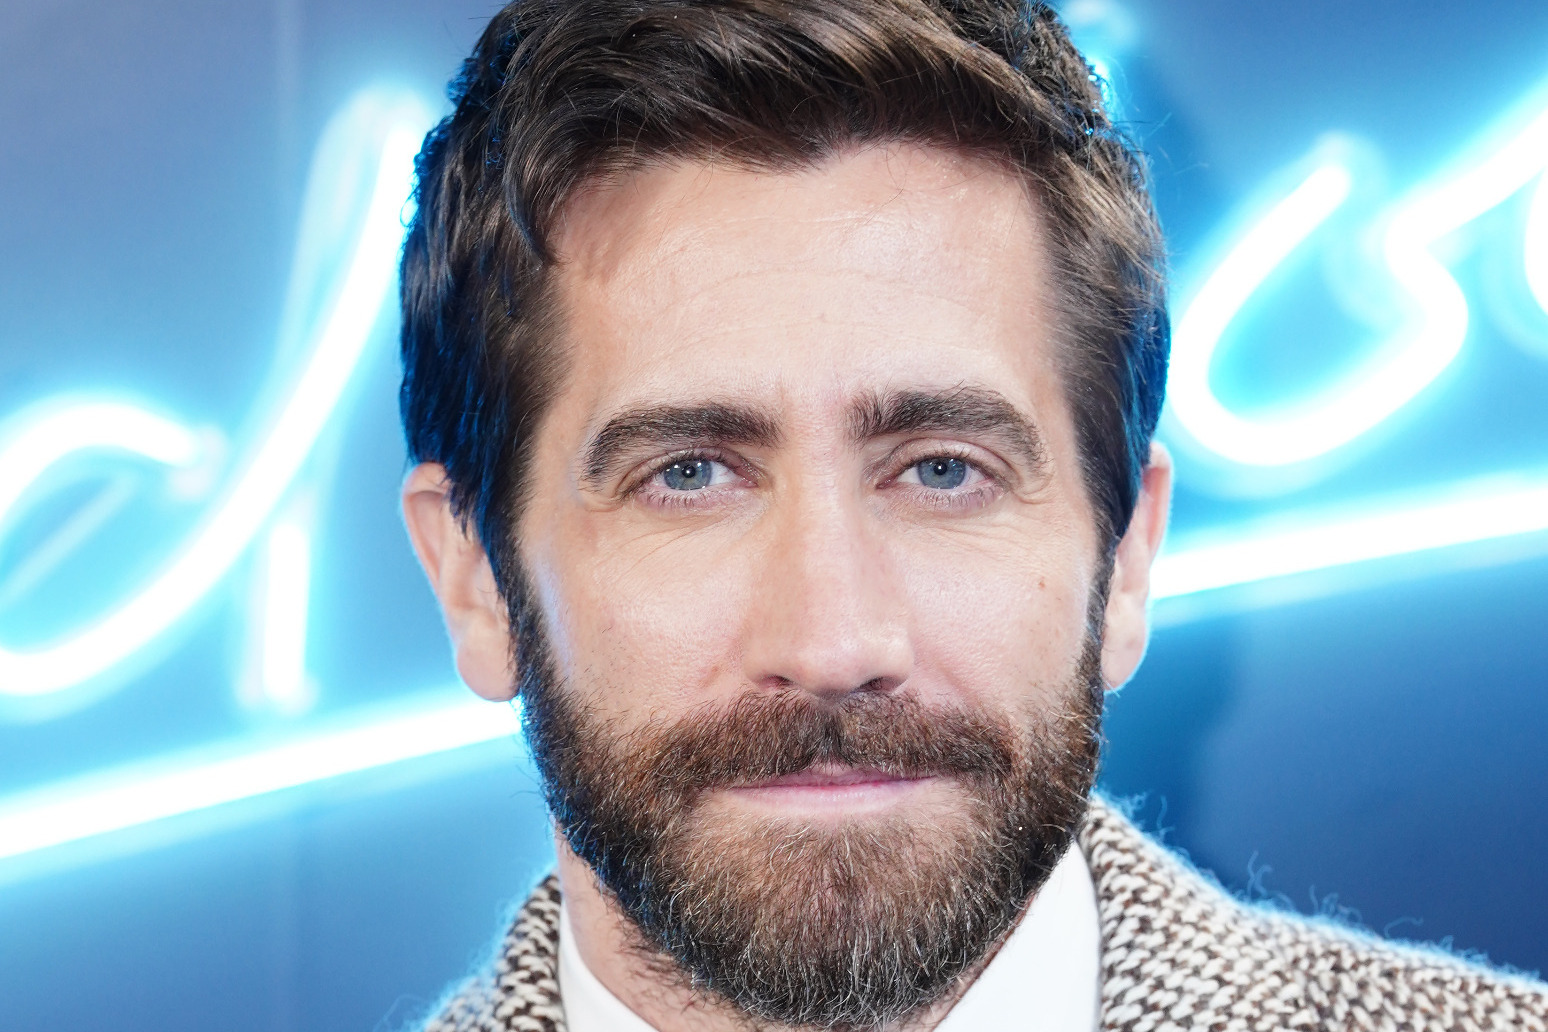 Jake Gyllenhaal on how he ‘honoured’ late Patrick Swayze 